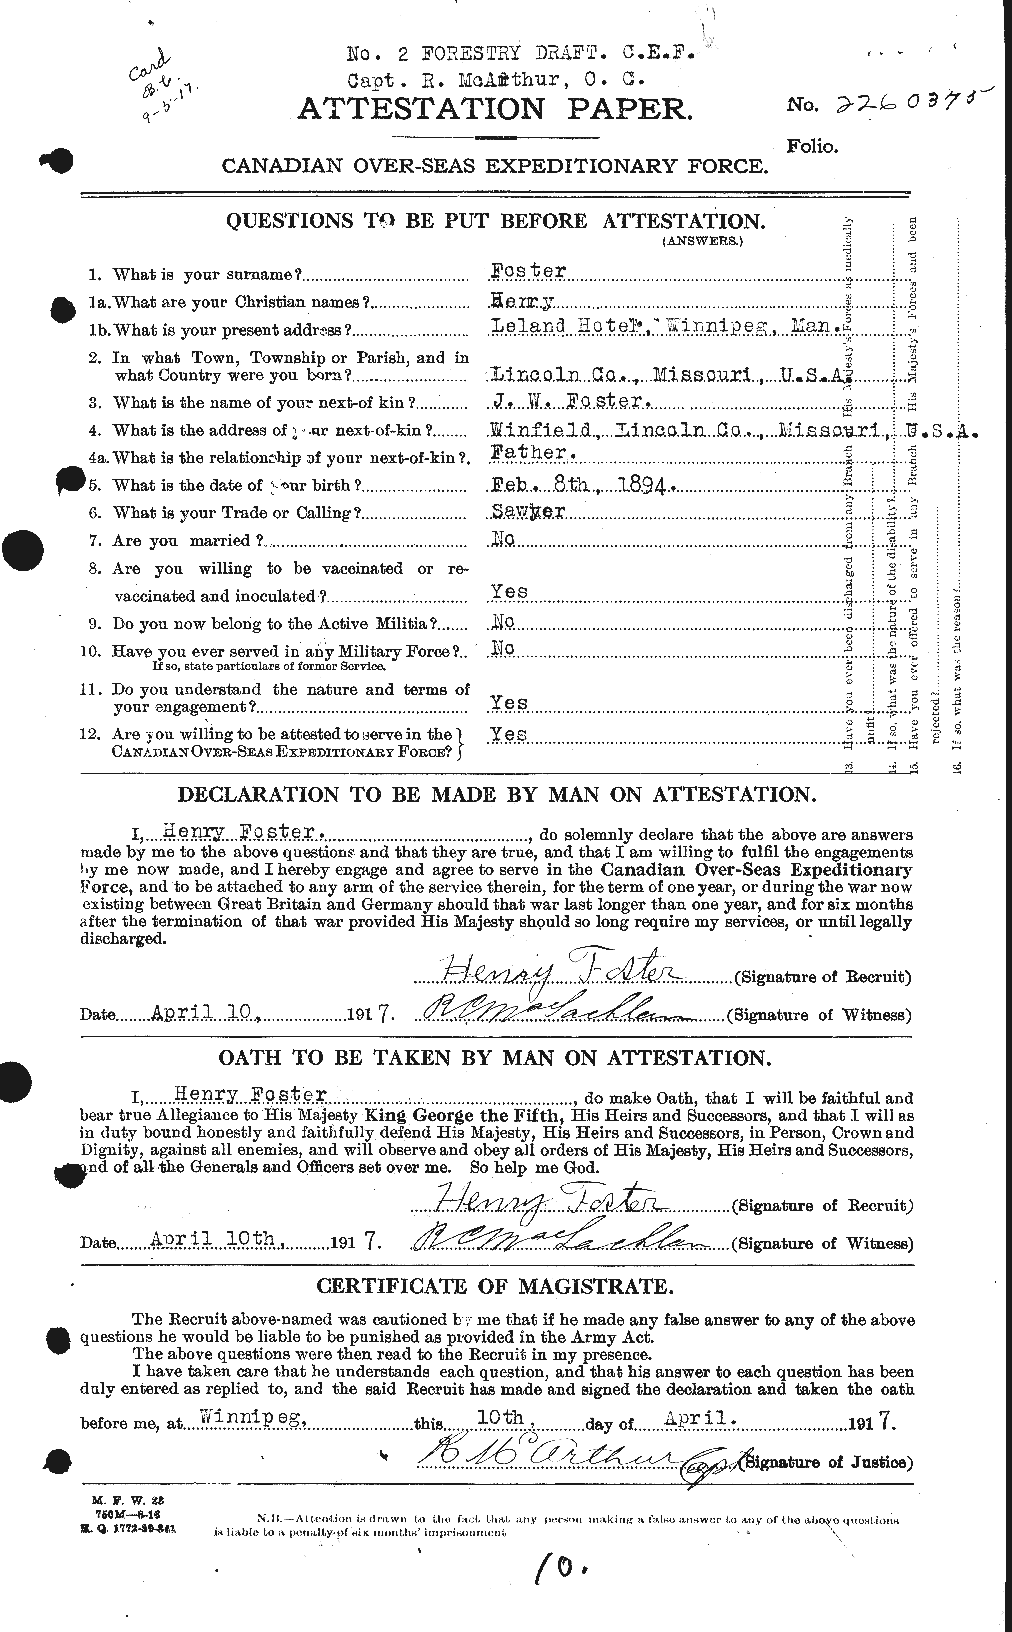 Dossiers du Personnel de la Première Guerre mondiale - CEC 333242a